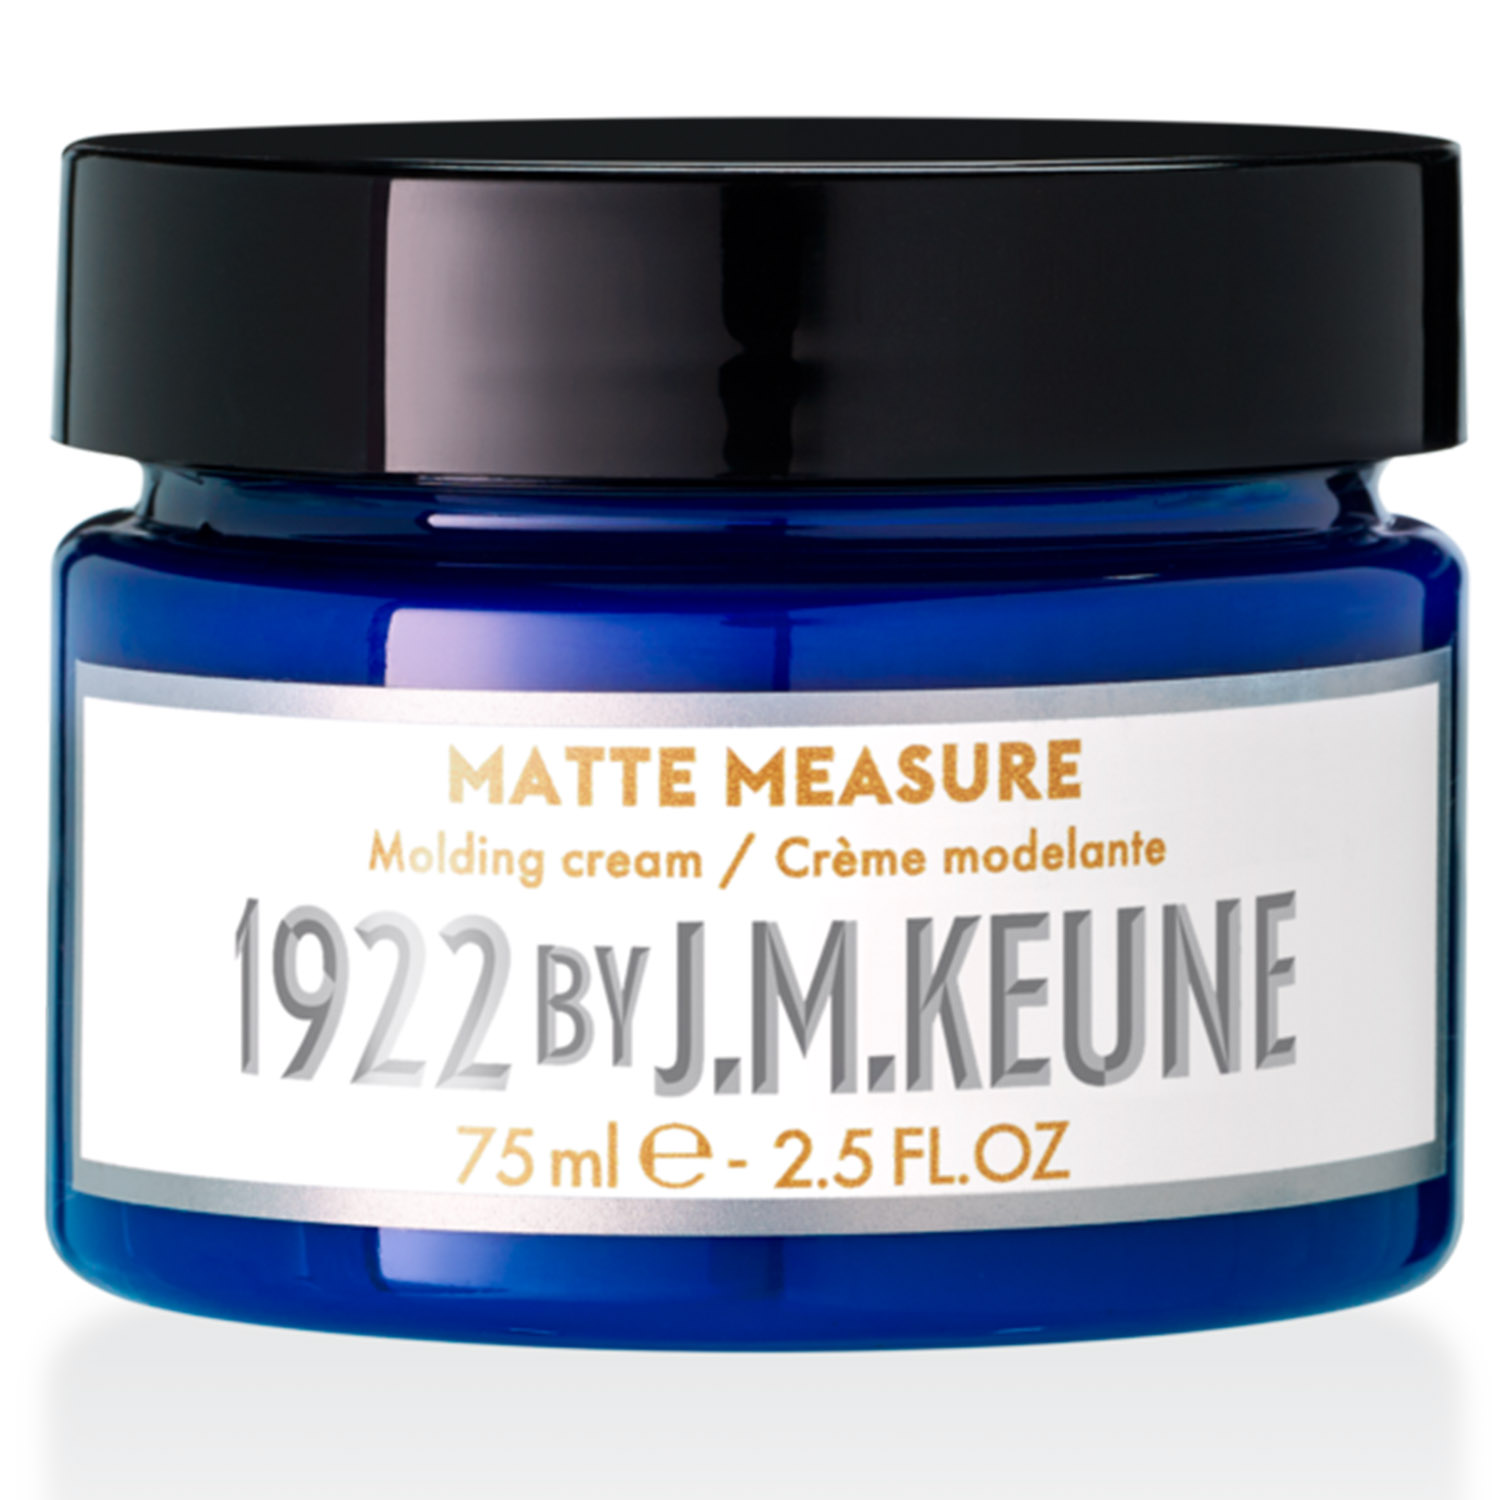 Keune Матирующий крем для укладки волос Matter Measure, 75 мл (Keune, 1922 by J.M. Keune) силиконовый чехол на realme 6 pro рилми 6 про с эффектом блеска бабочка на листке